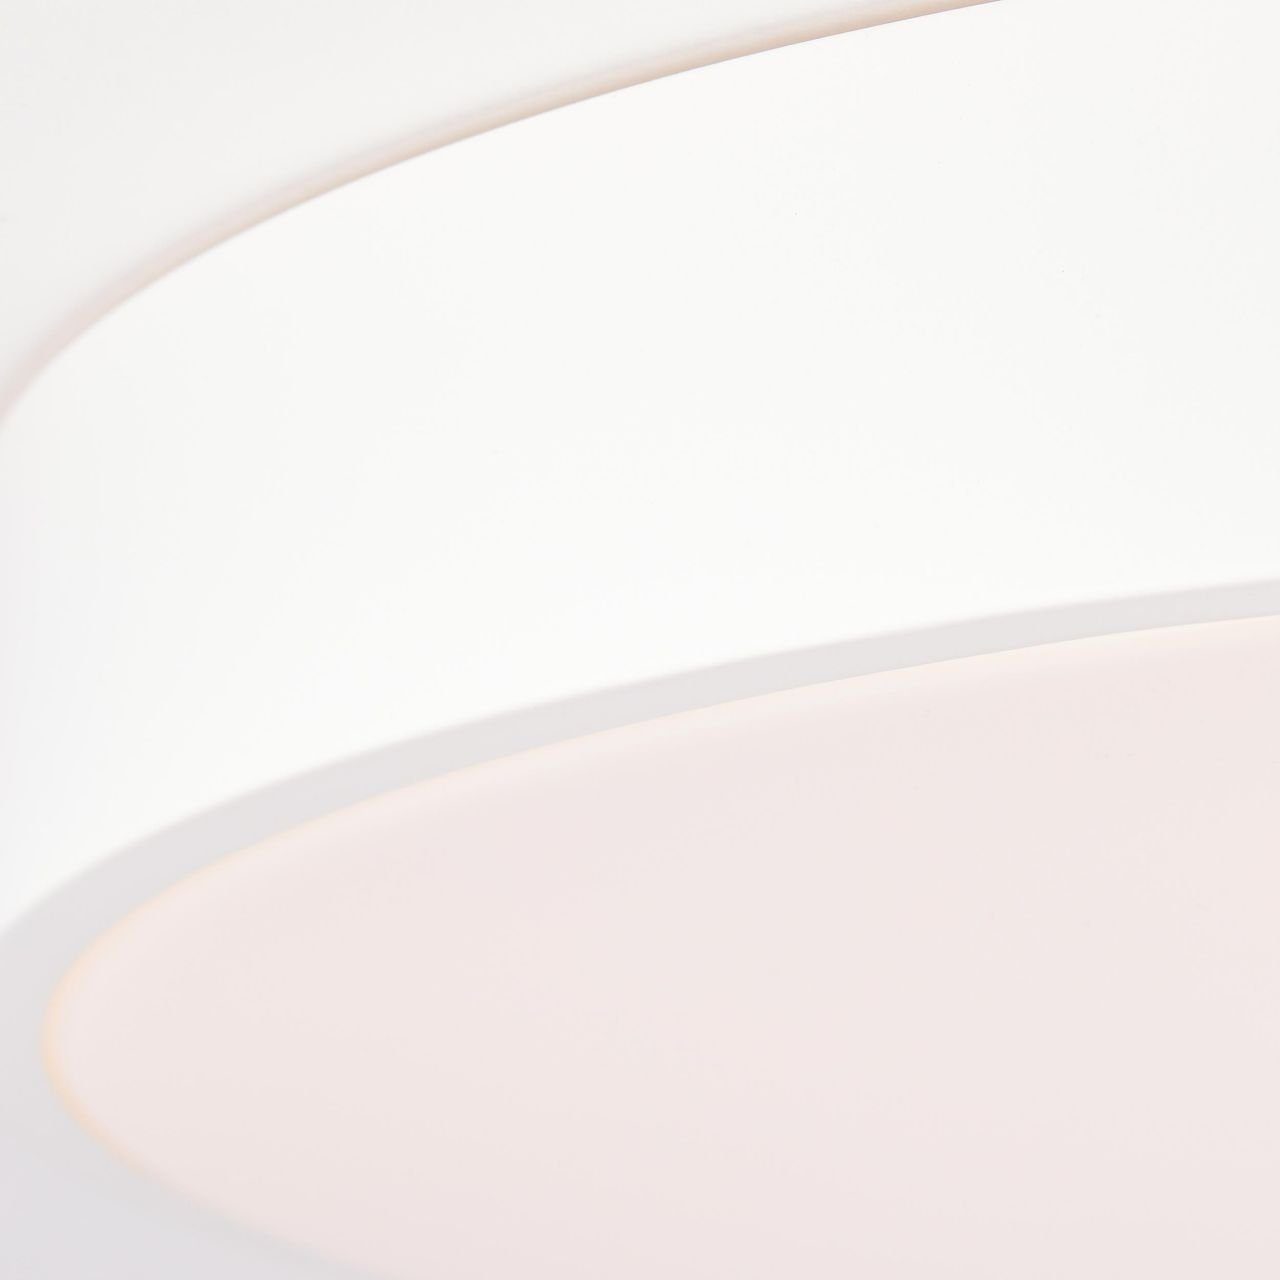 Lampe, 49cm Metall/Kun sand/weiß, Wand- LED Brilliant Slimline Slimline, Deckenleuchte und 3600-6500K, Deckenleuchte